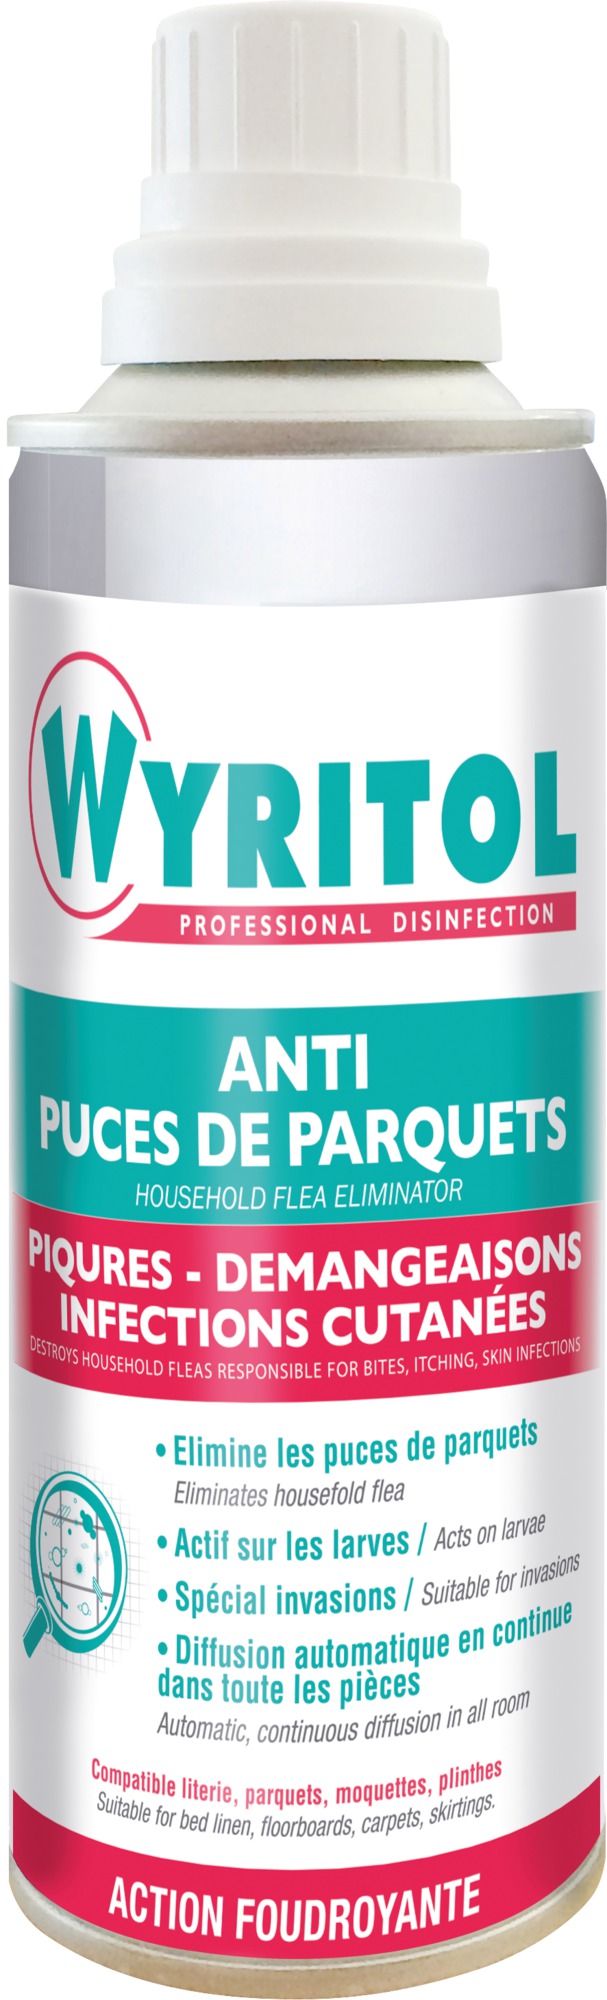 Anti puces de parquets Wyritol - Aérosol 200 ml